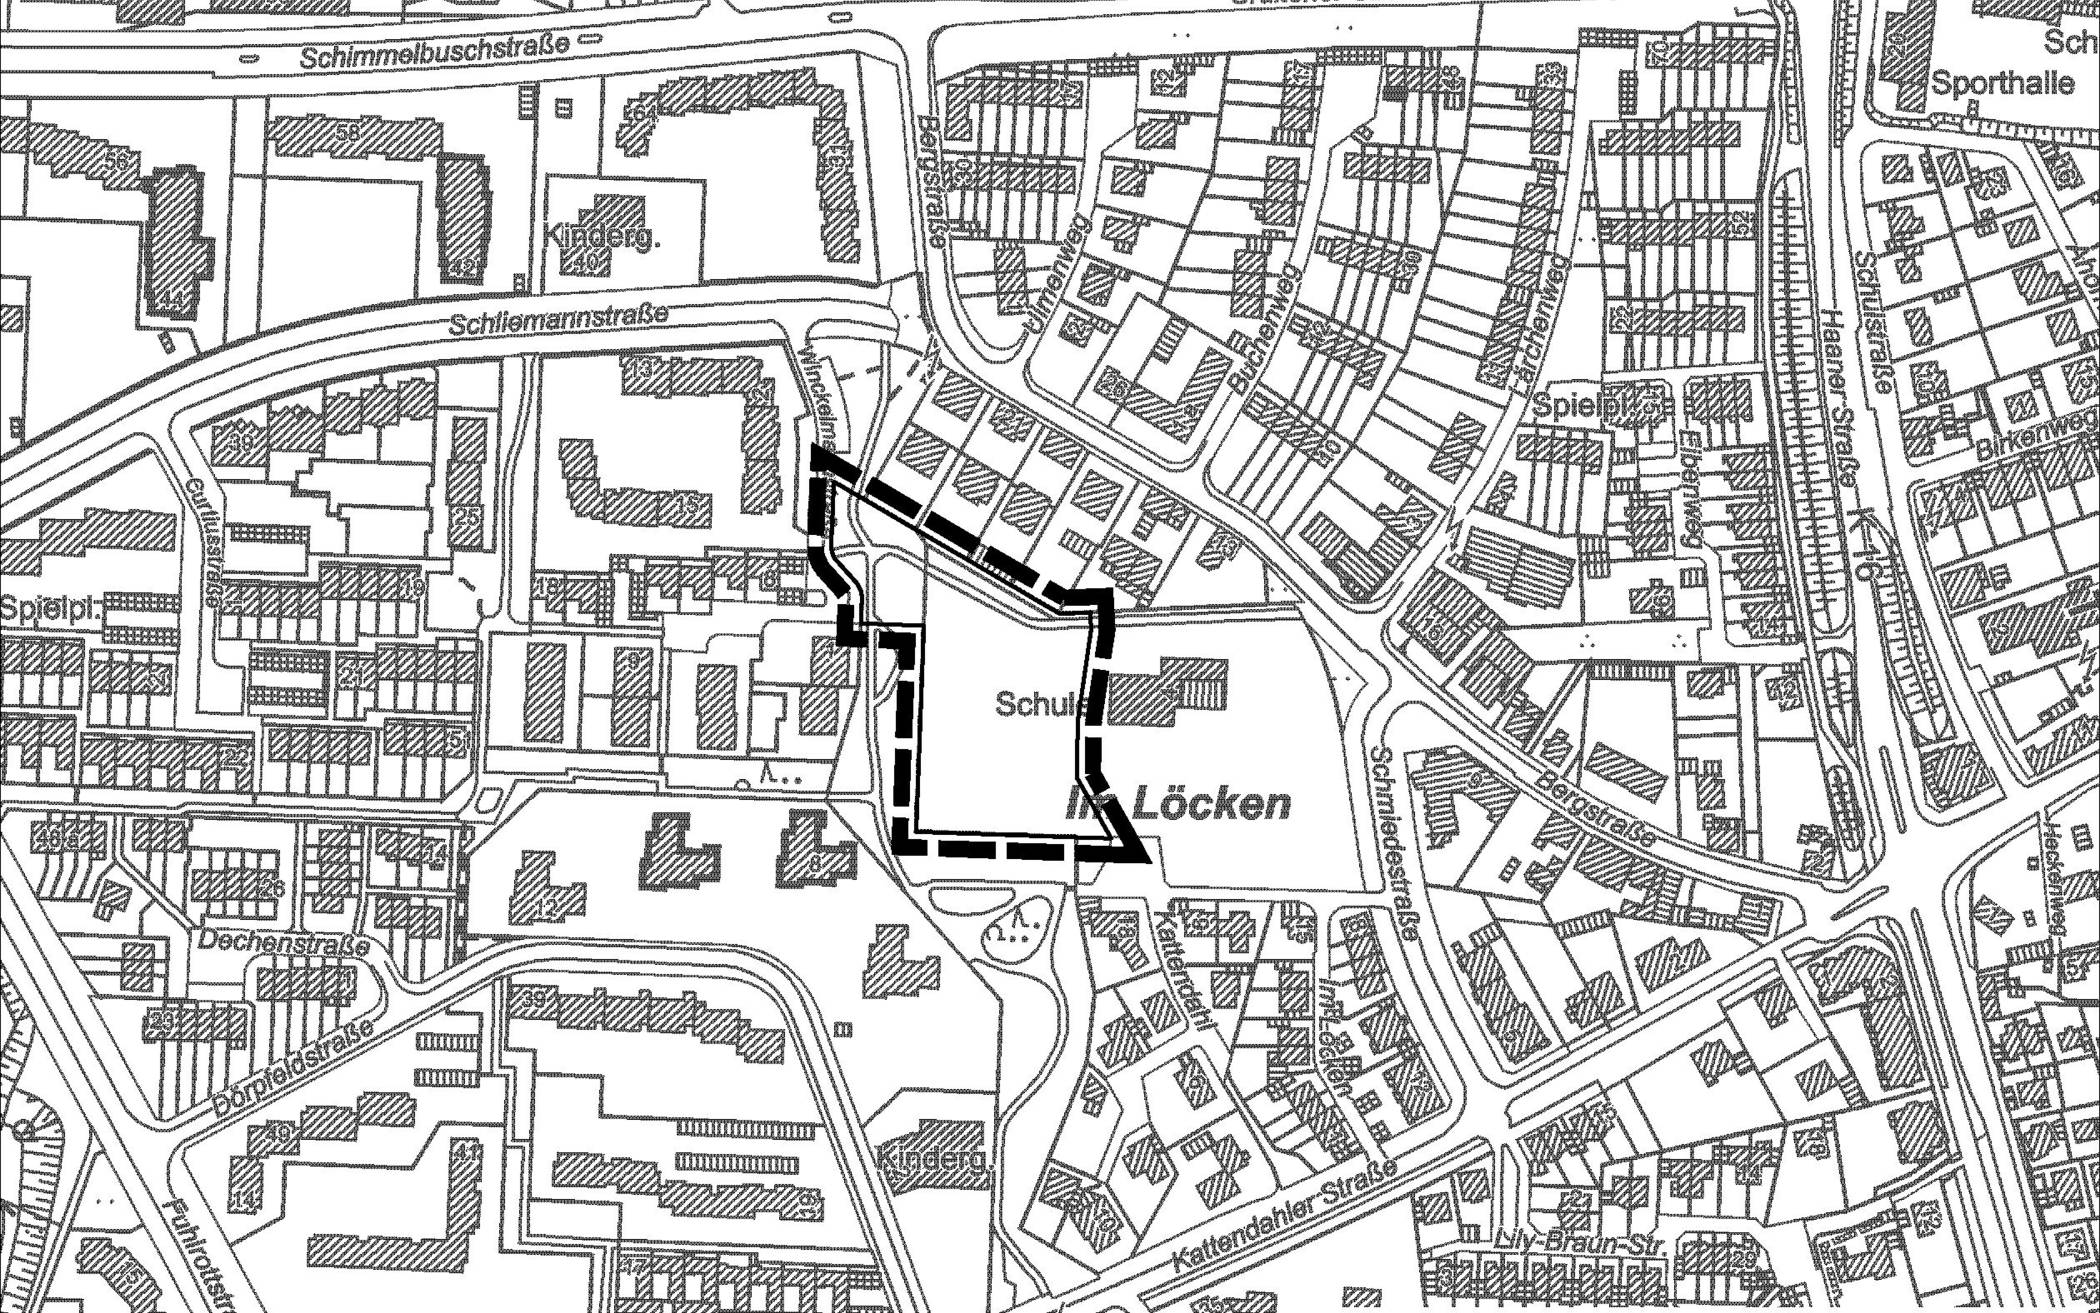  Abgrenzung des Bebauungsplans H 60 – Genossenschaftliches Wohnen Schmiedestraße auf der Plangrundlage der Bezirksregierung Köln. 